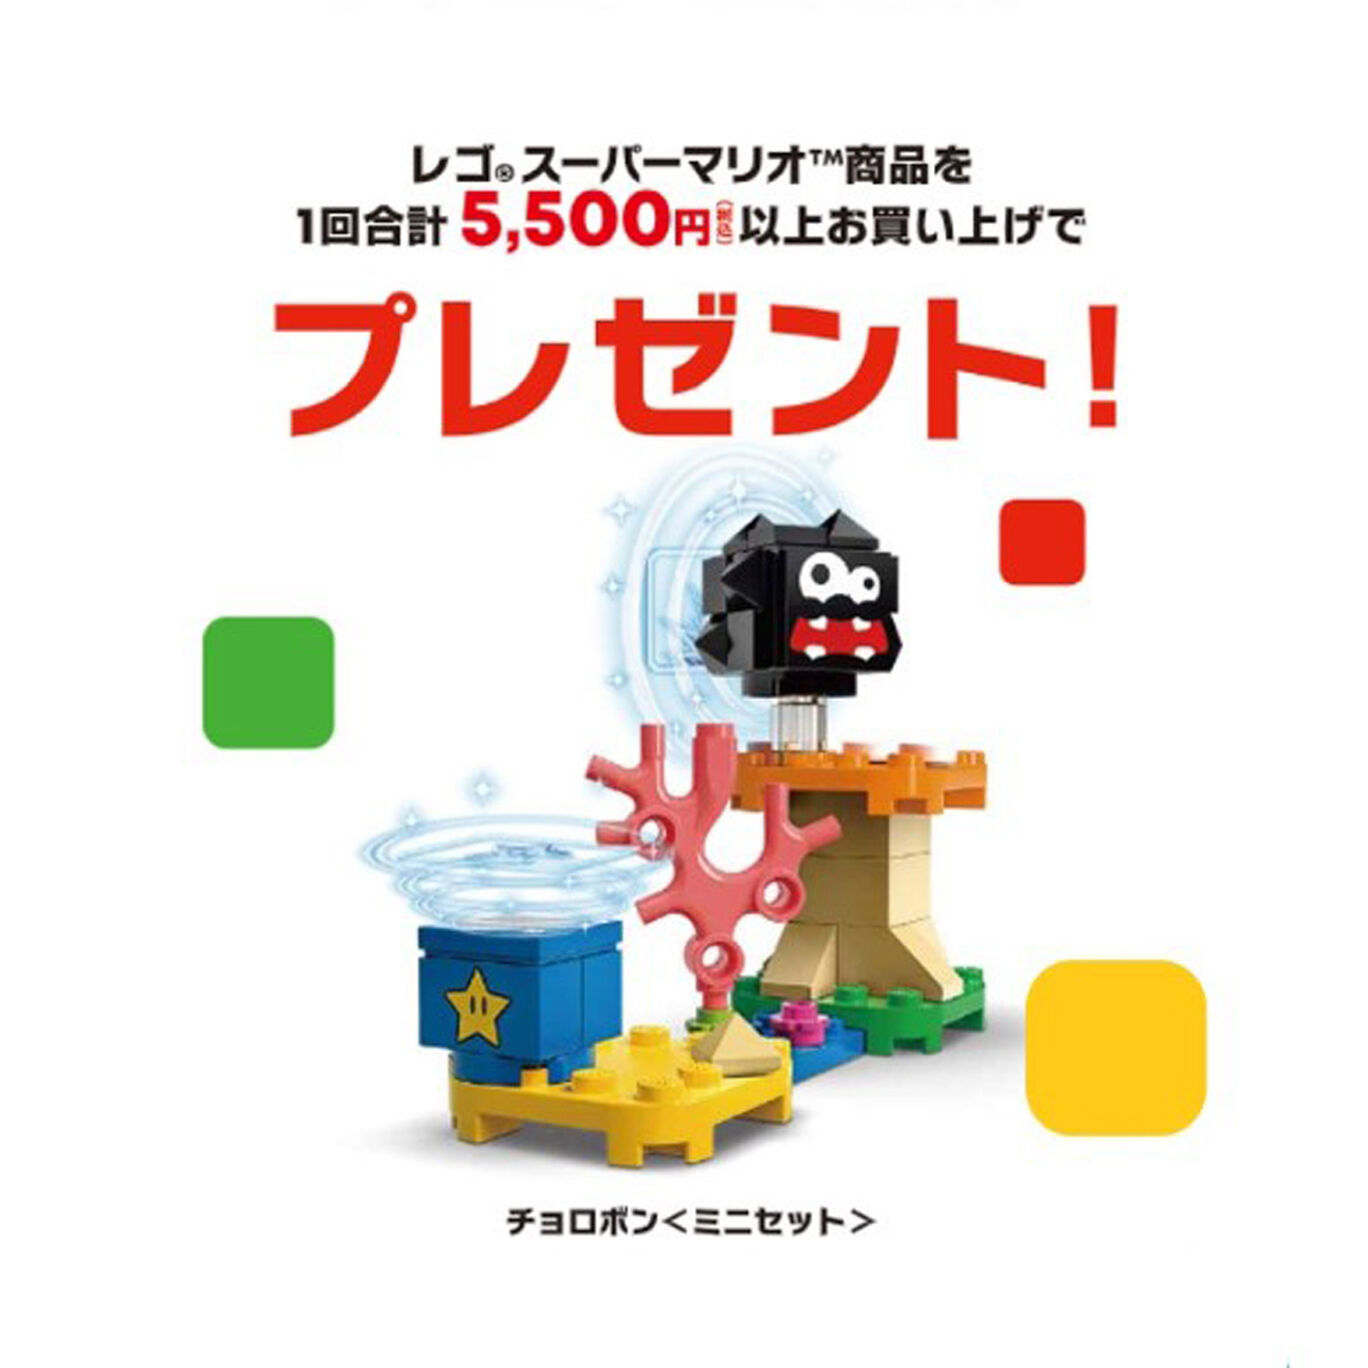 【新商品】レゴ®スーパーマリオ キャラクター パック – シリーズ5